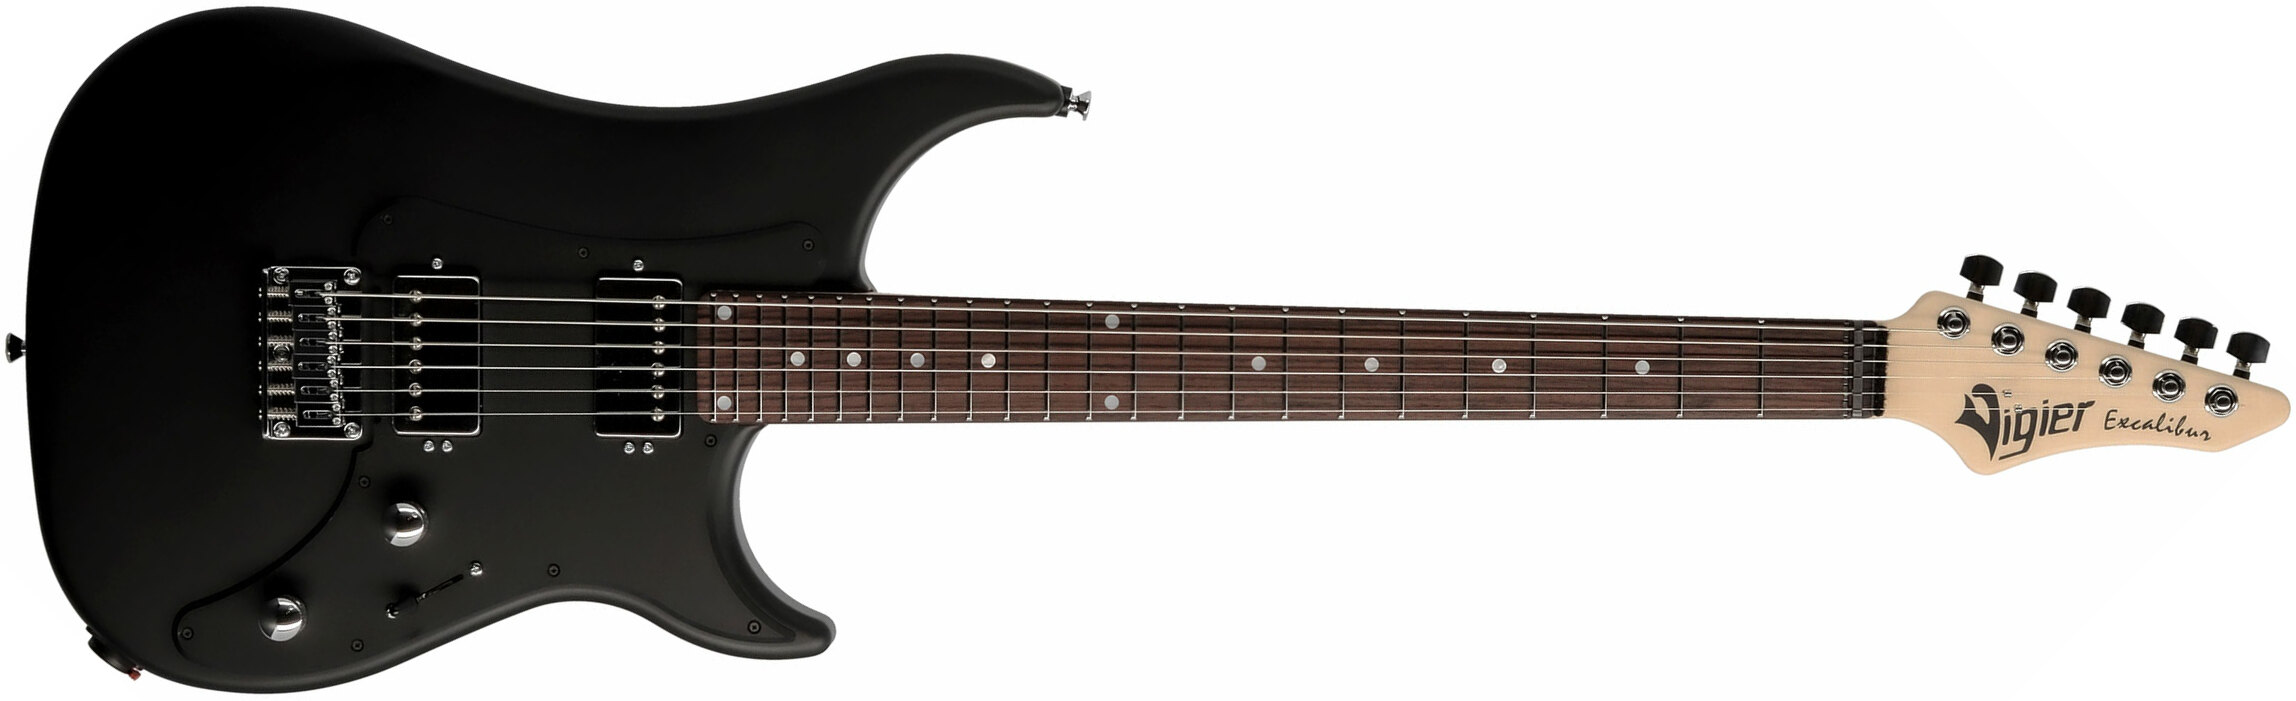 Vigier Excalibur Indus 2h Ht Rw - Black Matte - Guitarra eléctrica de doble corte. - Main picture